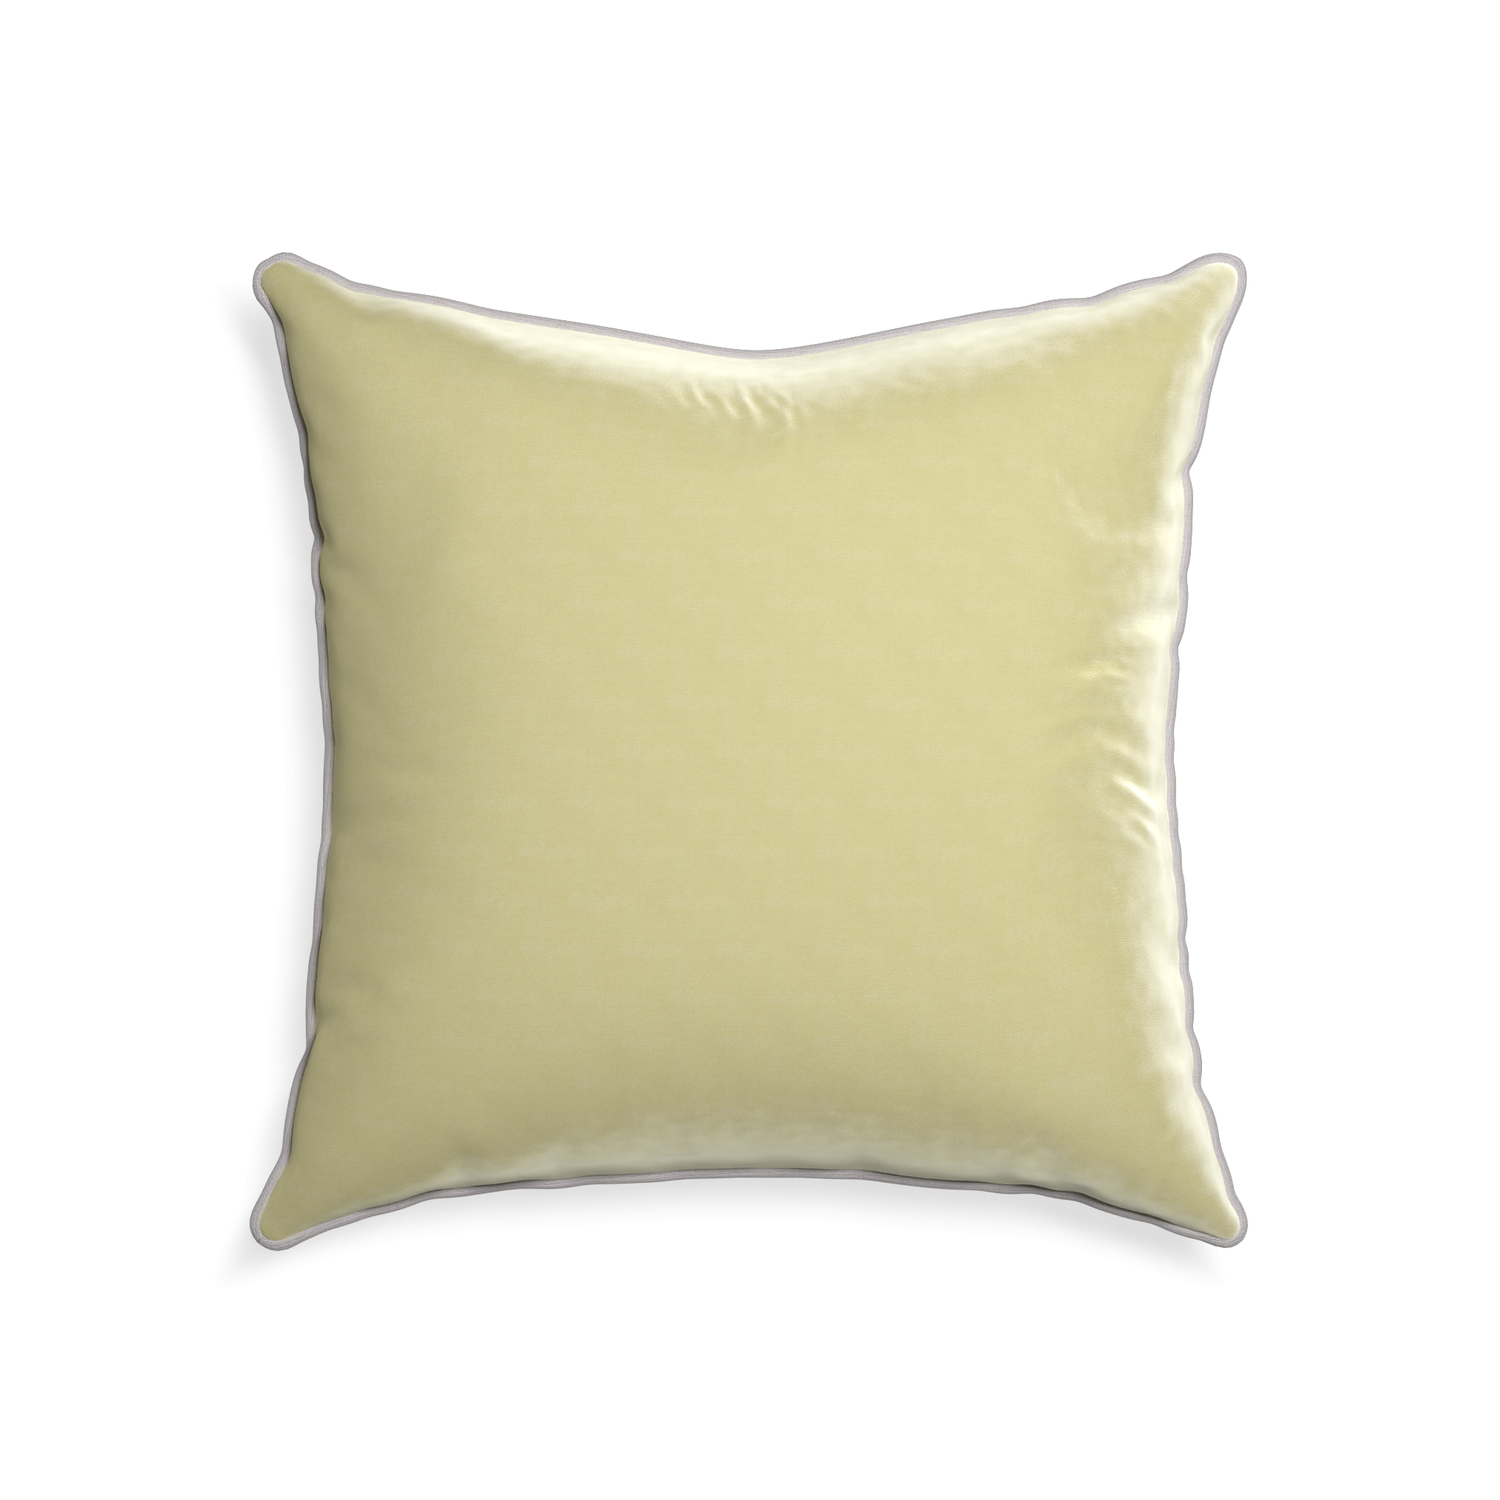 square light green velvet pillow with light gray piping